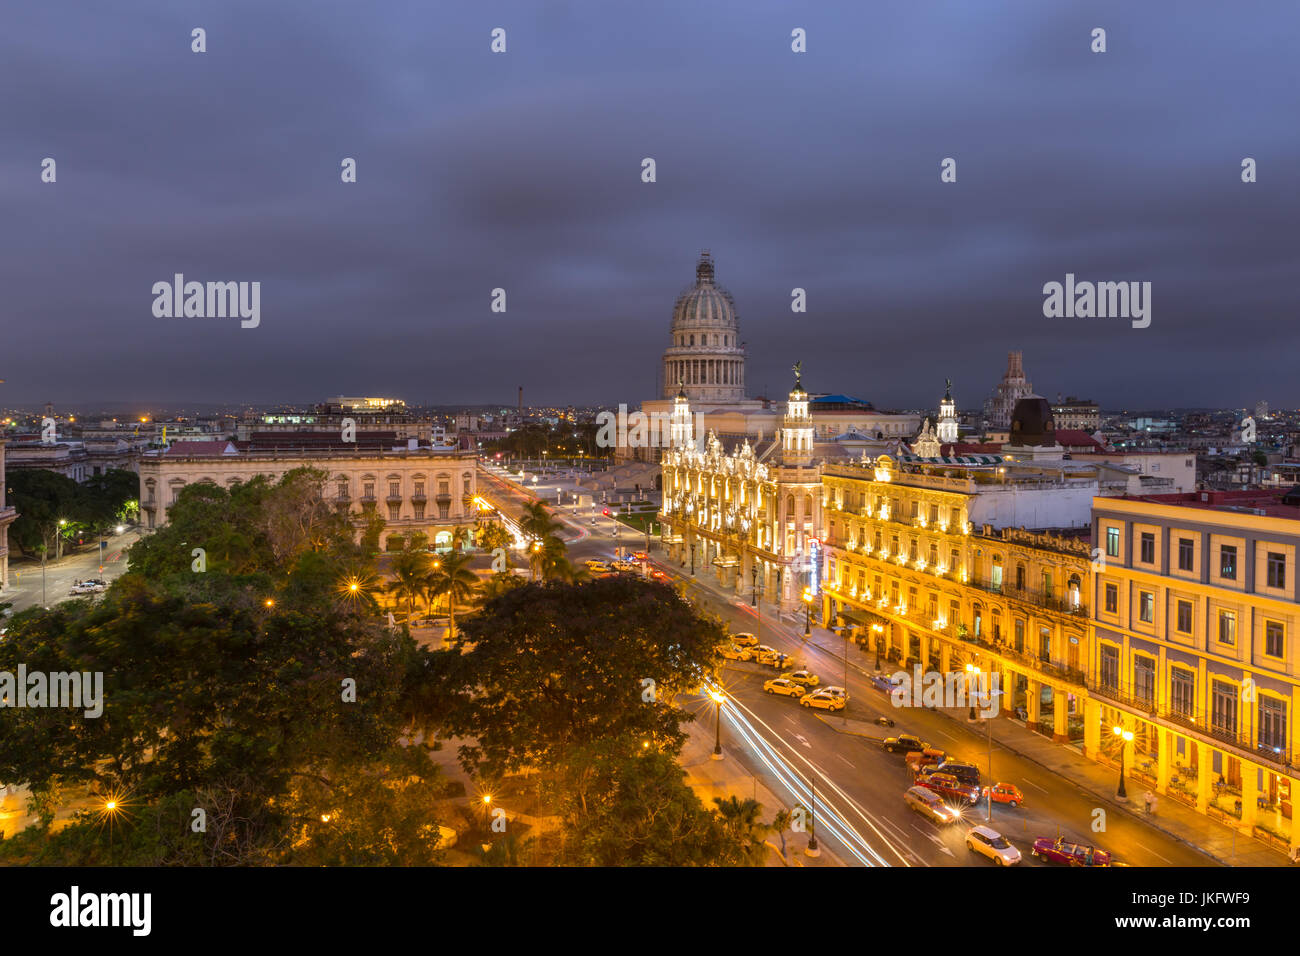 Night view of El Capitolio, Gran Teatro de la Habana, Parque Central and La Habana Vieja, Old Havana  from above, Havana, Cuba Stock Photo